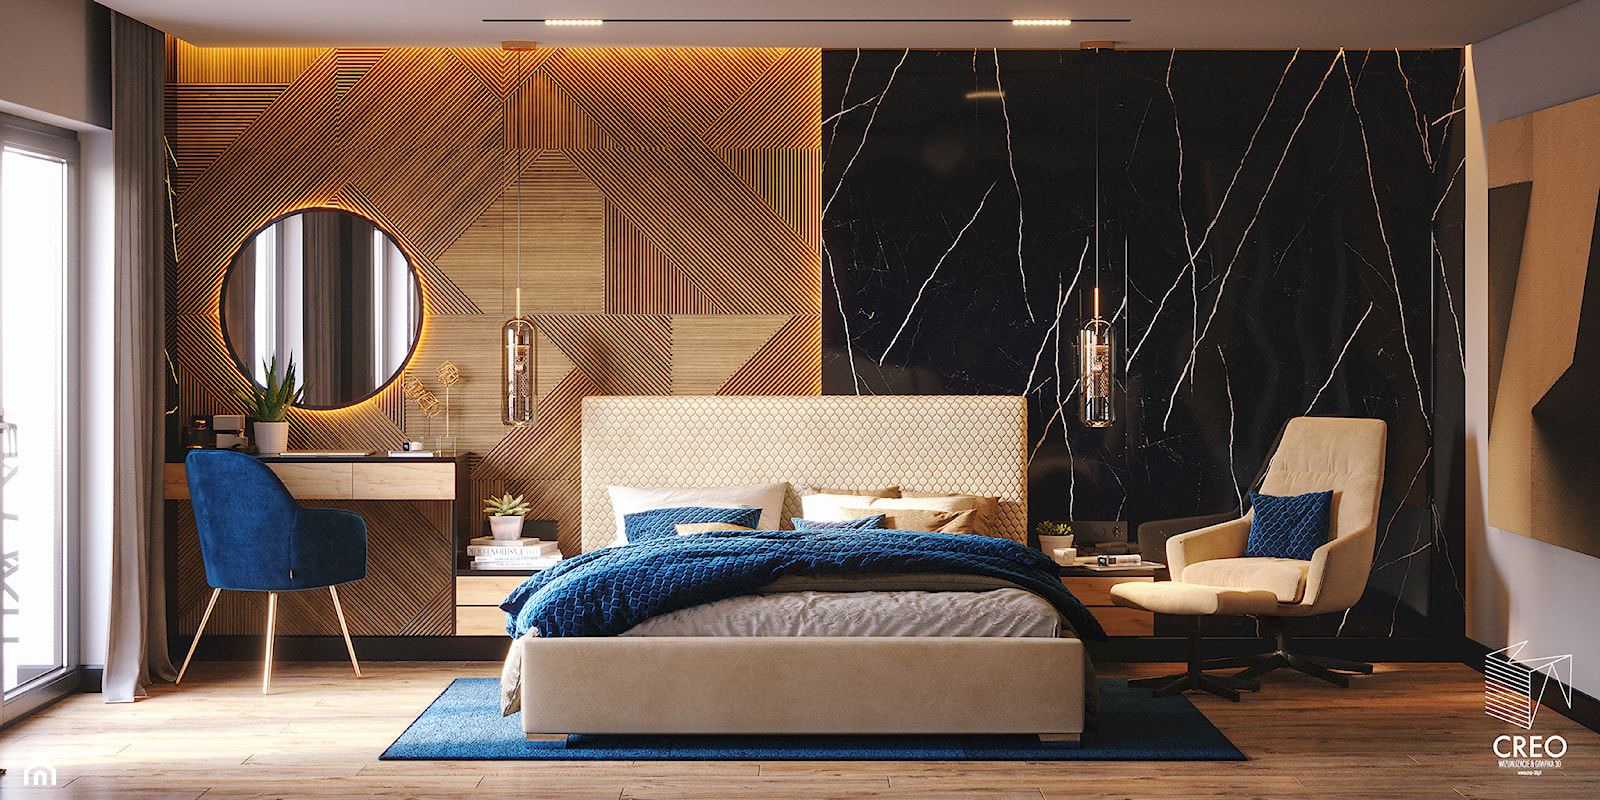 Sypialnia nowoczesna w ciepłym wydaniu - zdjęcie od Creo Wizualizacje 3d - Homebook